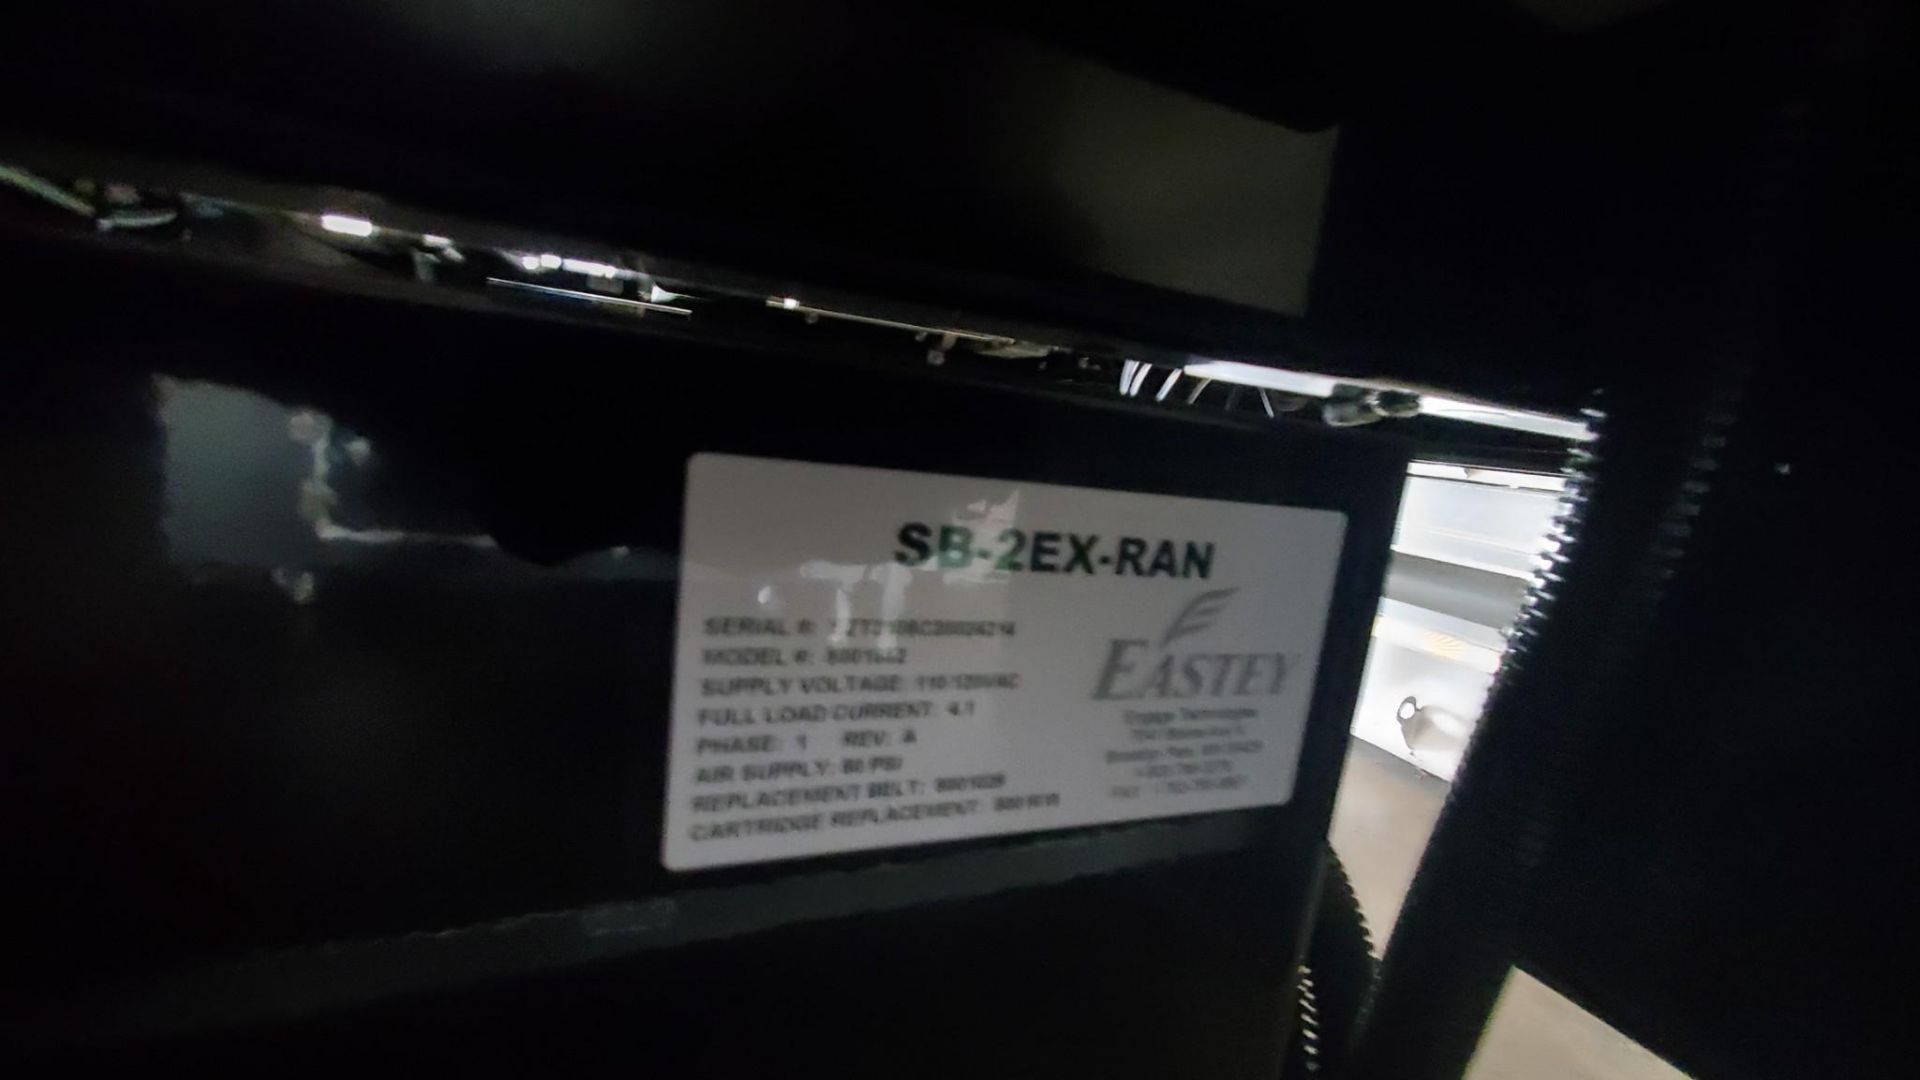 EASTEY SB-2EX-RANDOM SIDE BELT CASE TAPER, 2021 - Bild 4 aus 7